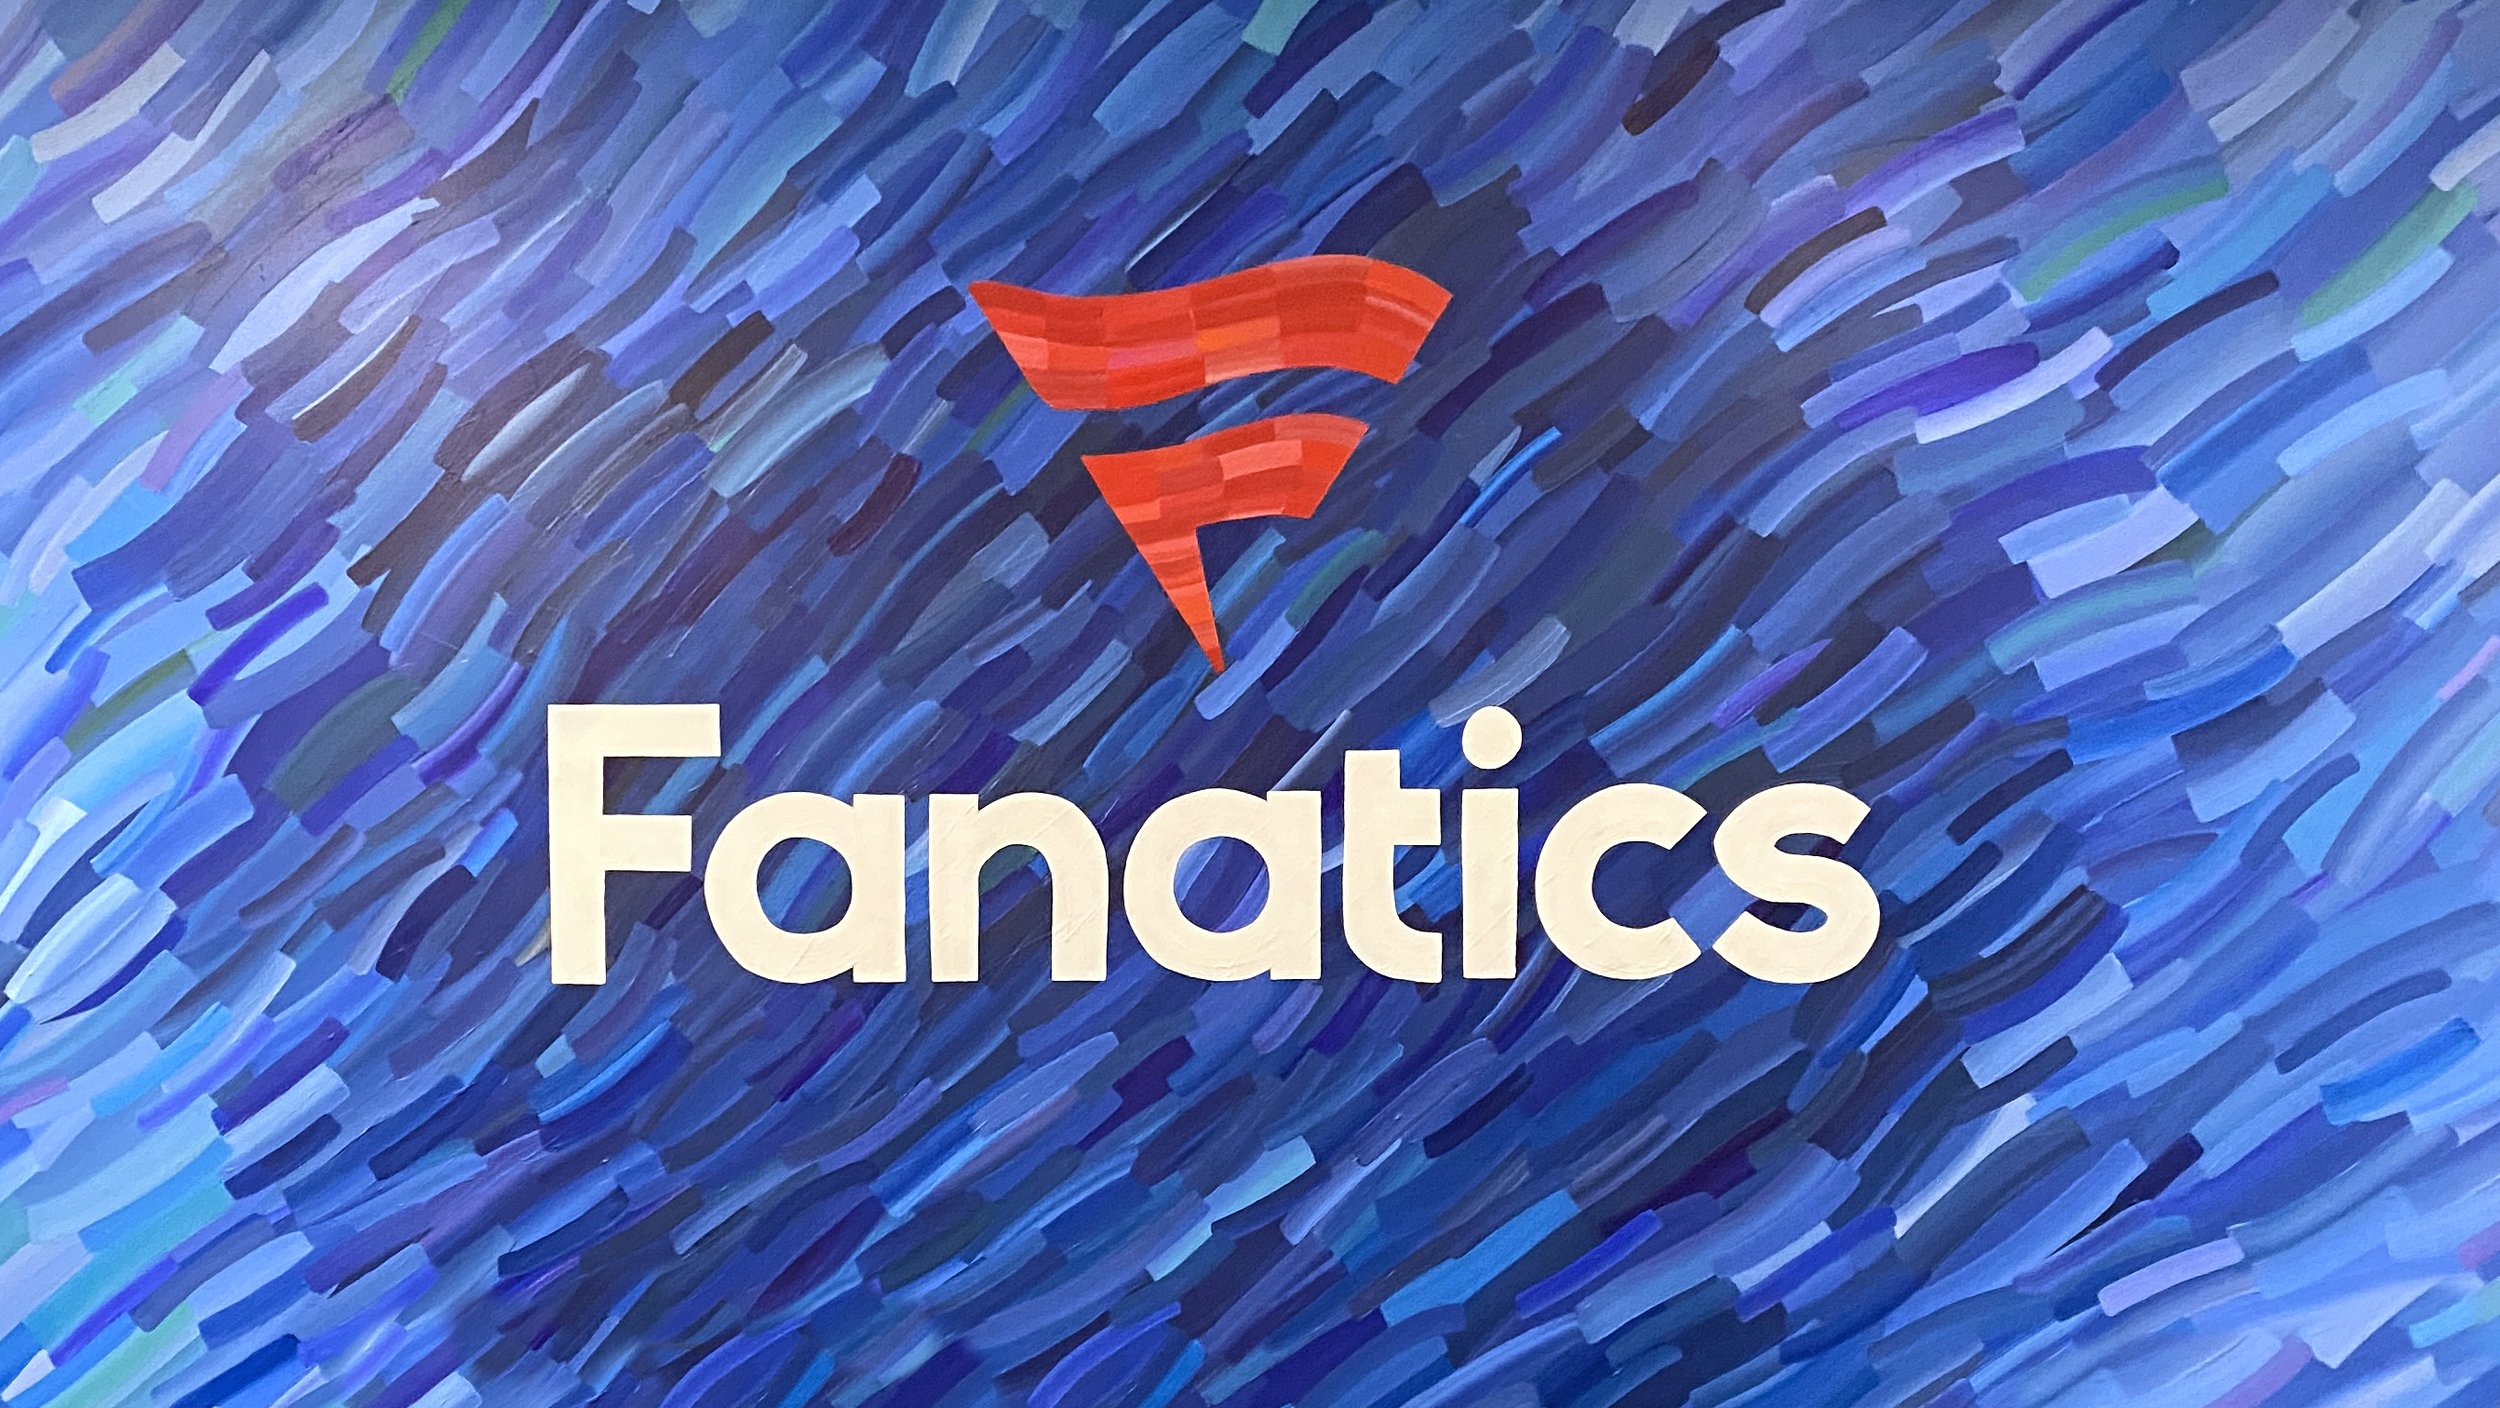 Fanatics Commerce — Fanatics Inc